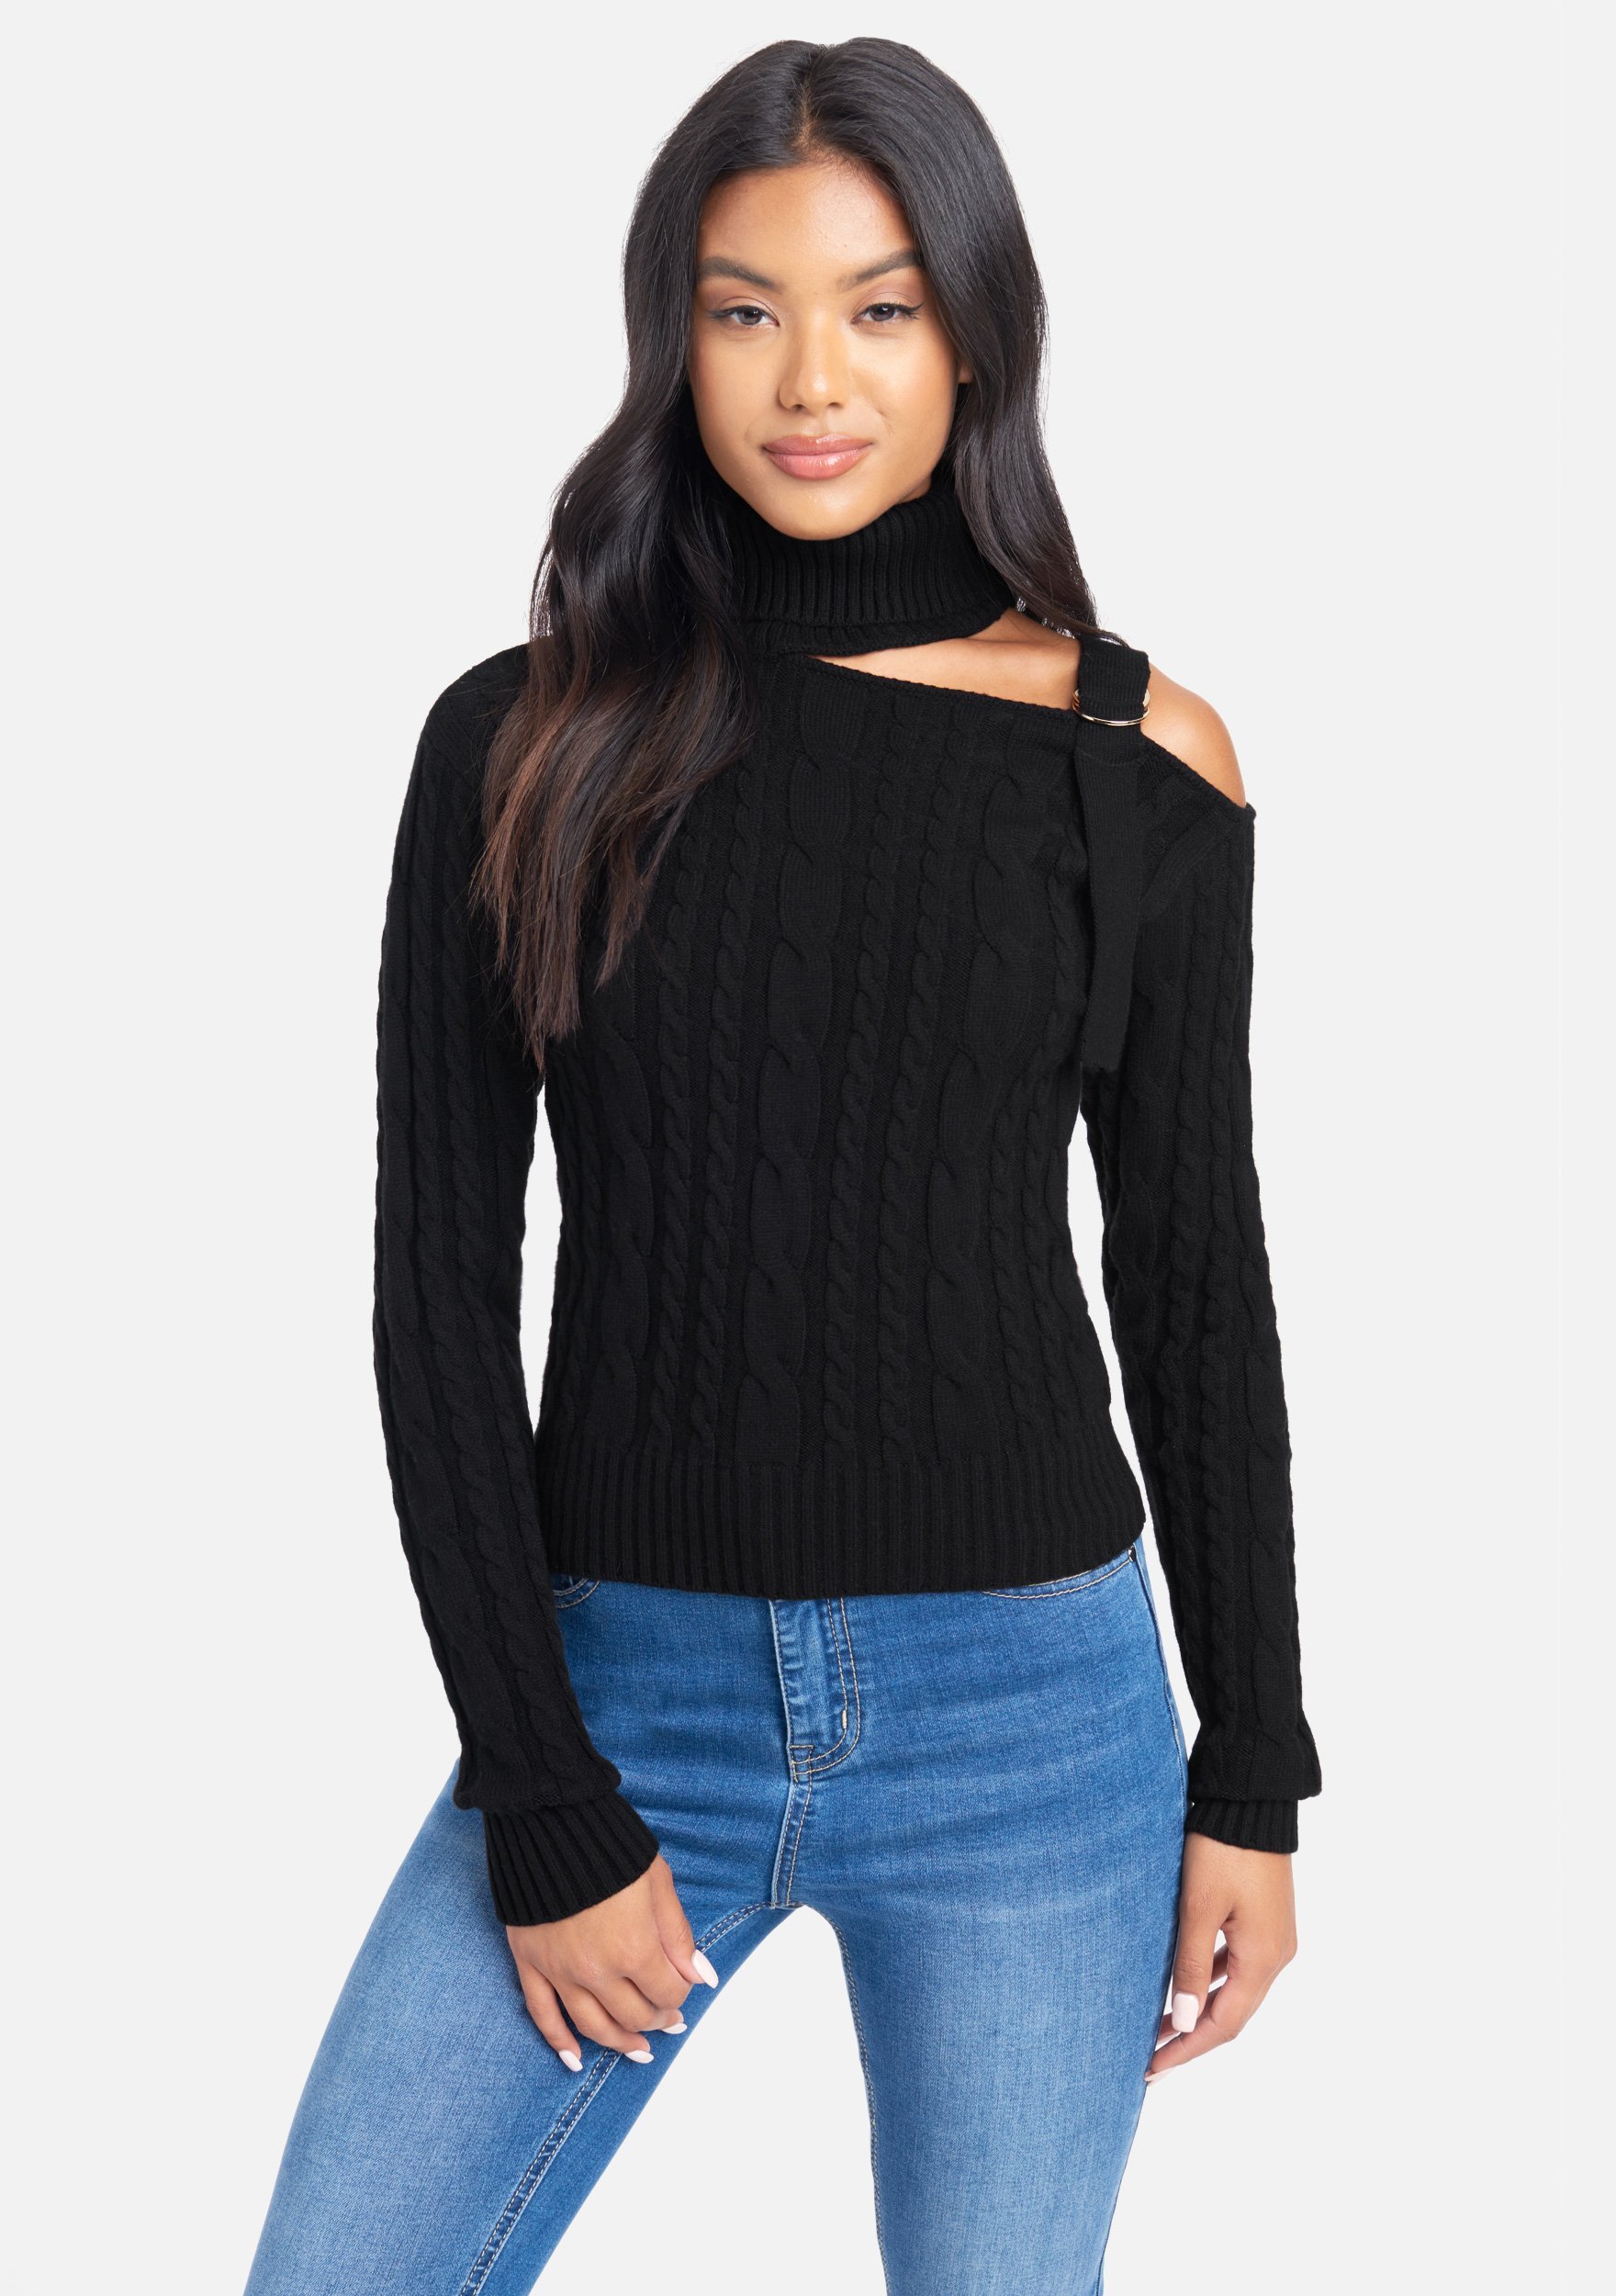 Bebe Women's Mock Neck Cut Out Sweater Top, Size XXS in Black Spandex/Nylon